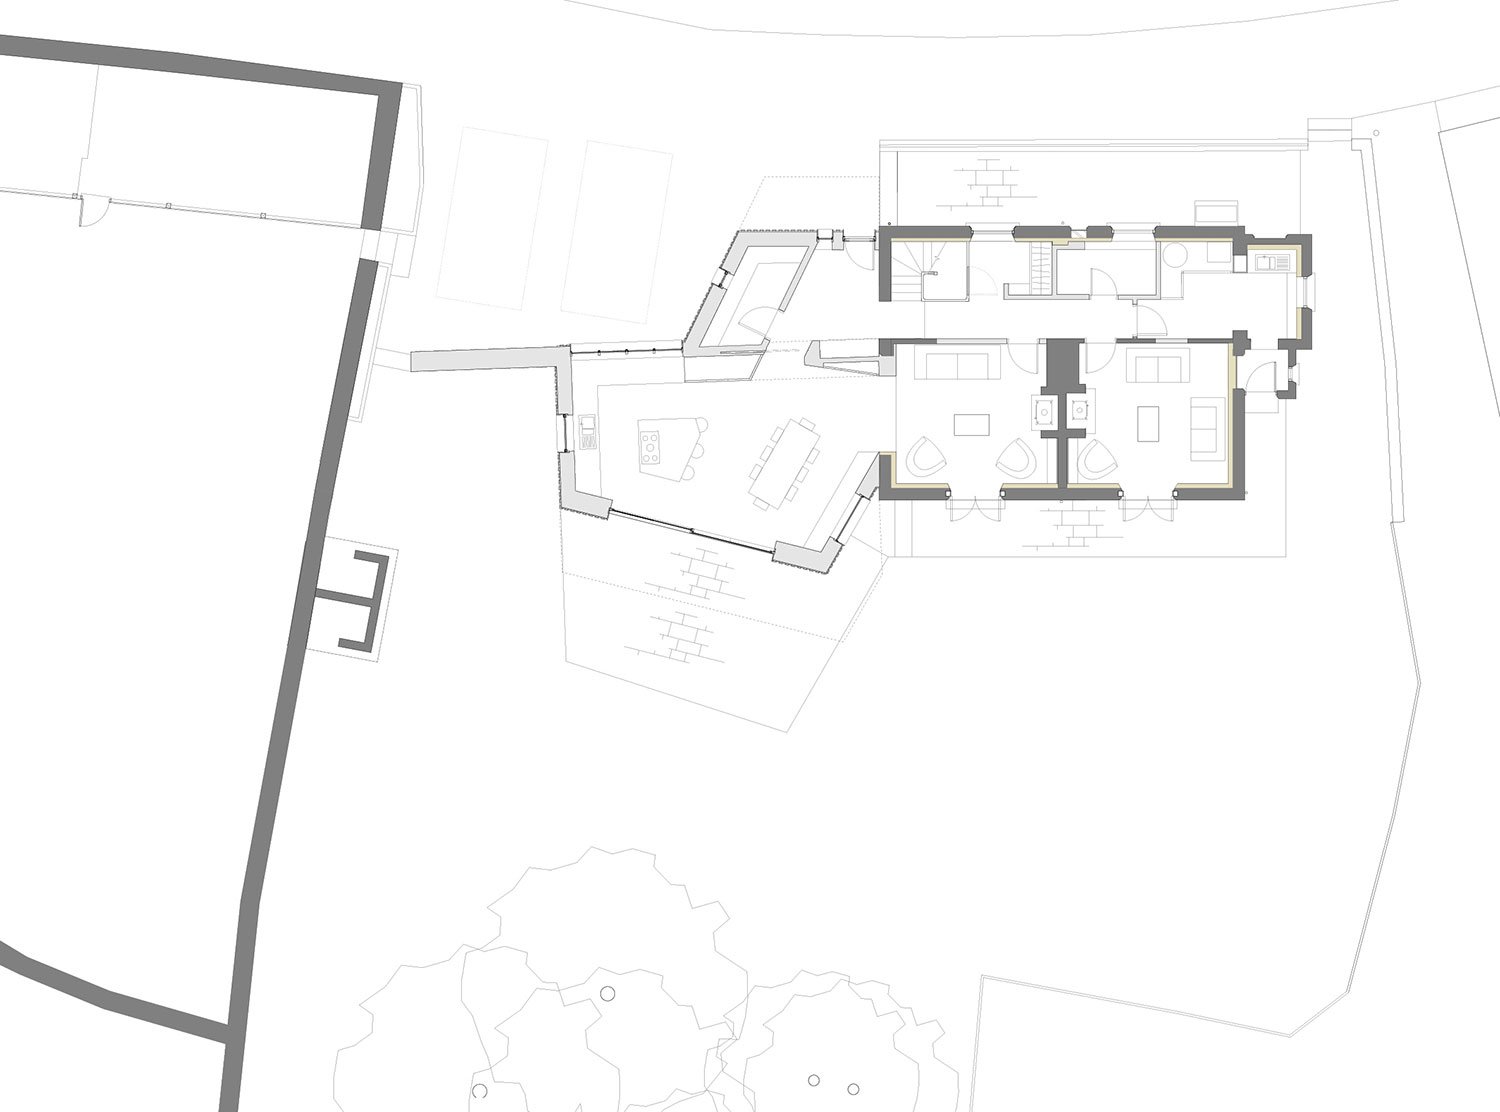 Devon-retrofit-enerphit-extension-passivhaus-prewett-bizley-architects-plan.jpg